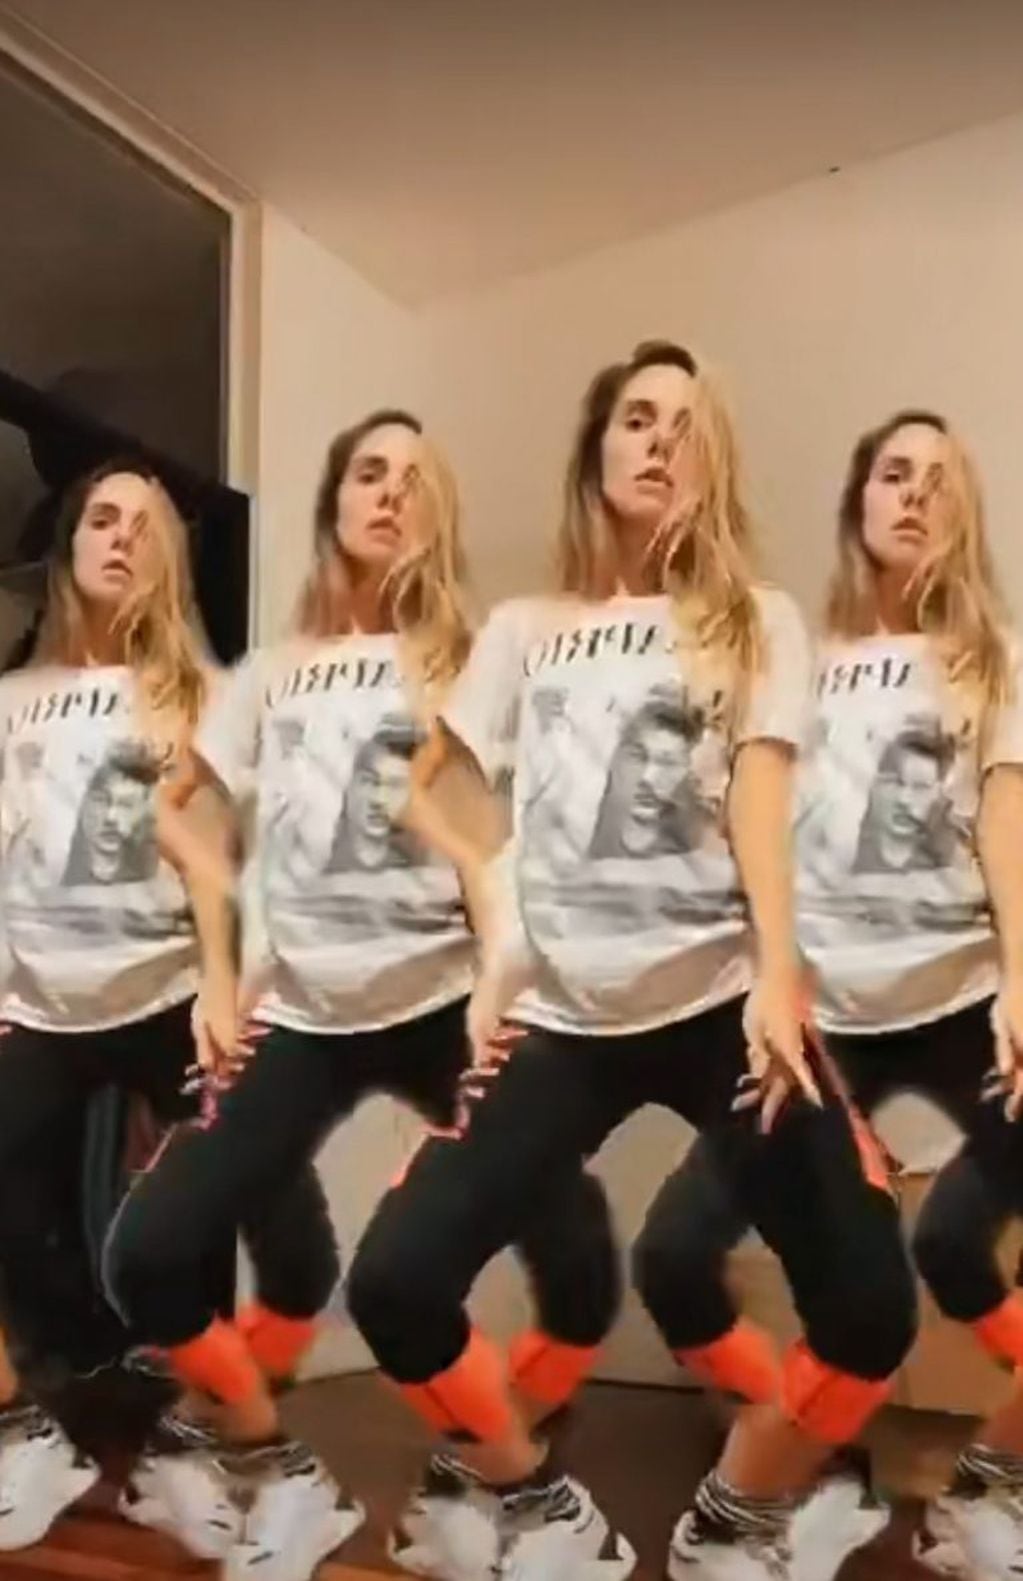 La actriz hizo un baile con el filtro "5 clones" de TikTok. (Instagram/@julietanaircalvo)